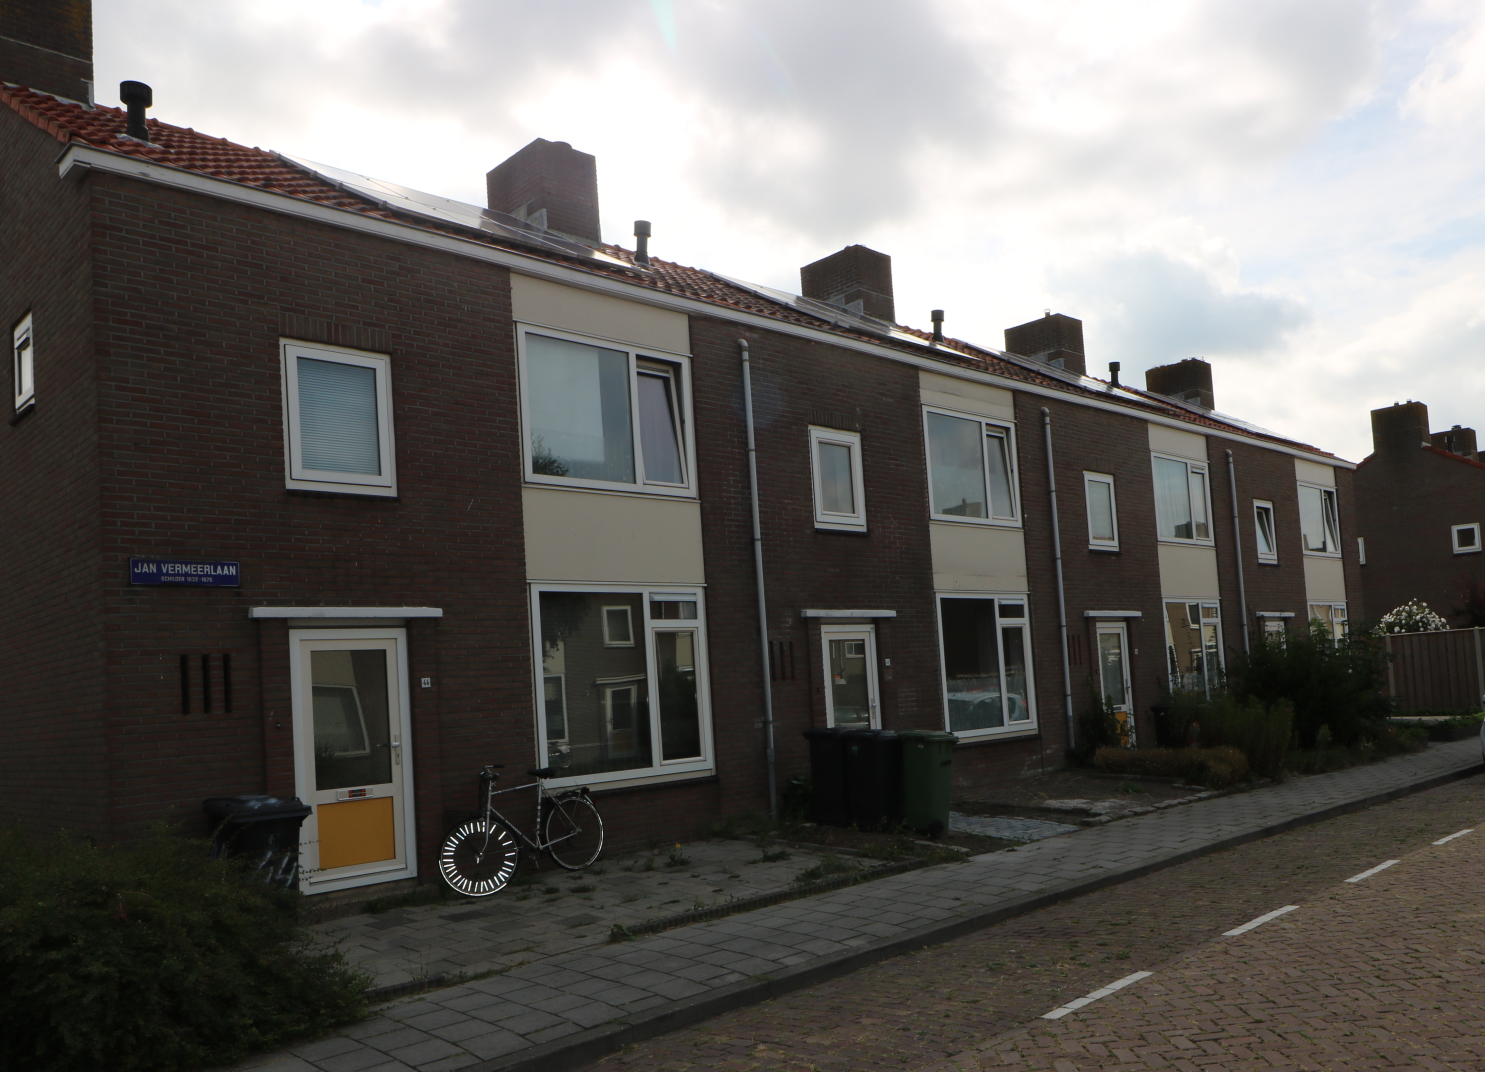 Jan Vermeerlaan 11, 4382 RX Vlissingen, Nederland